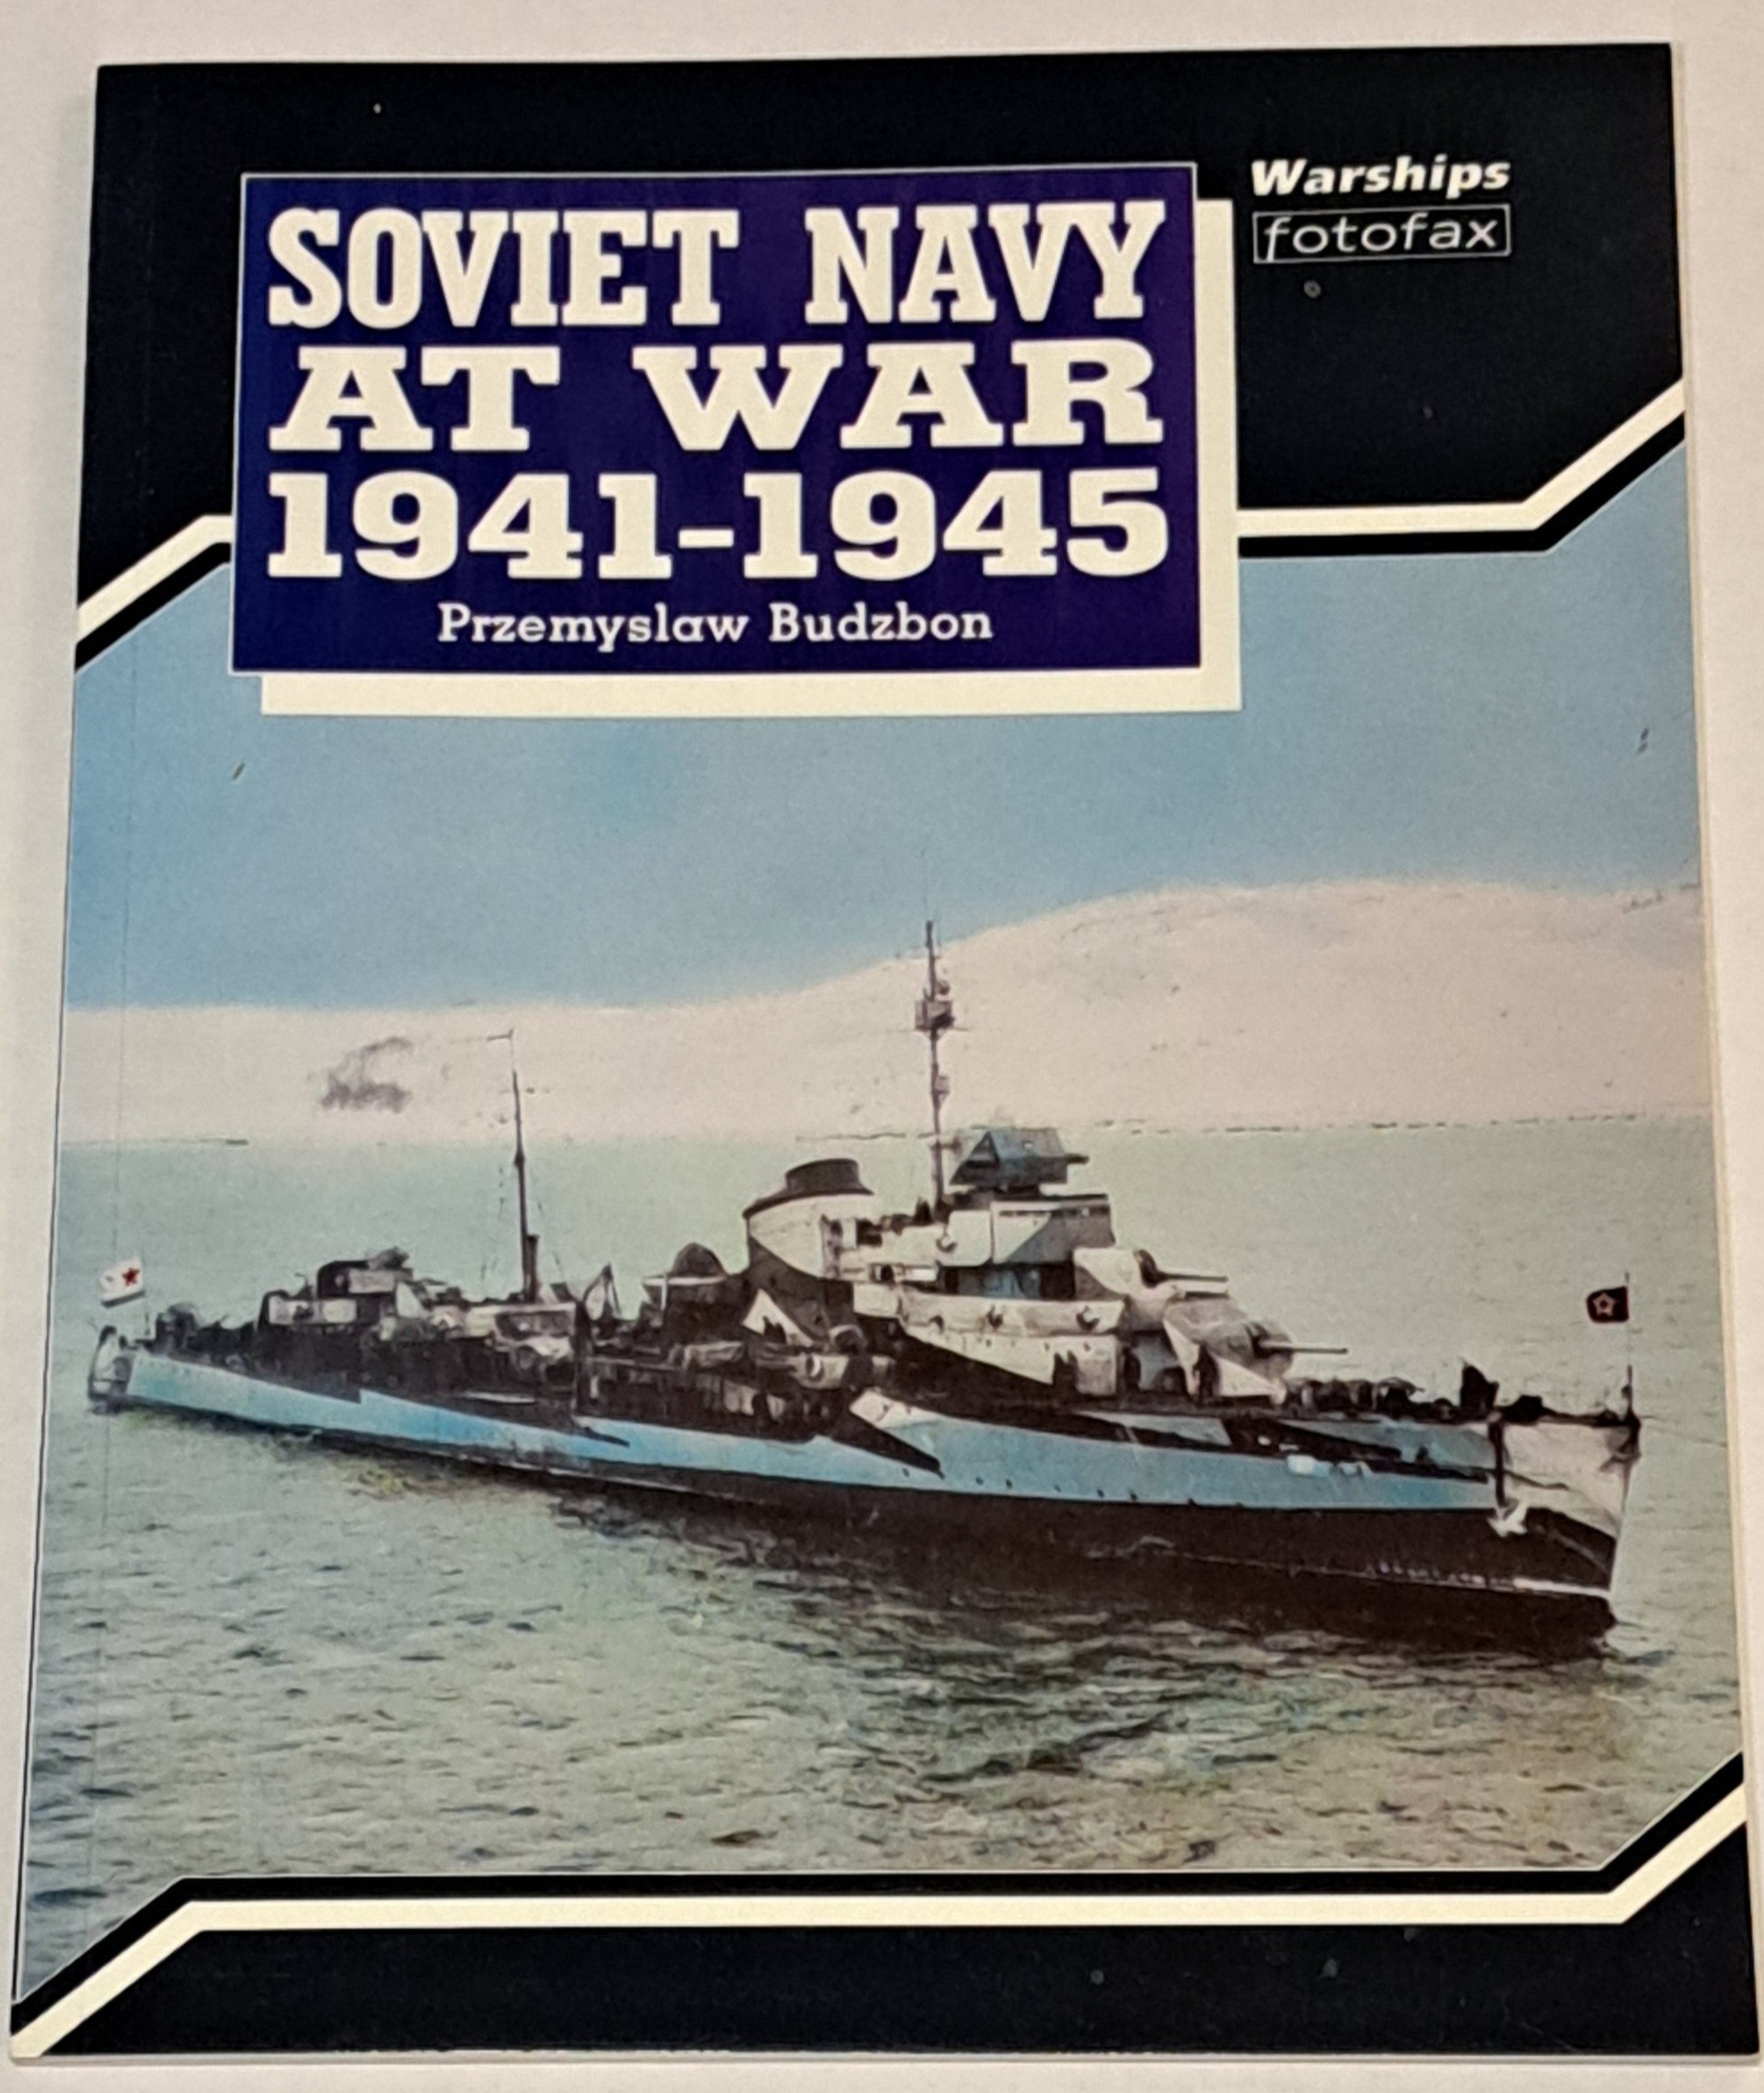 Soviet Navy at War 1941-1945